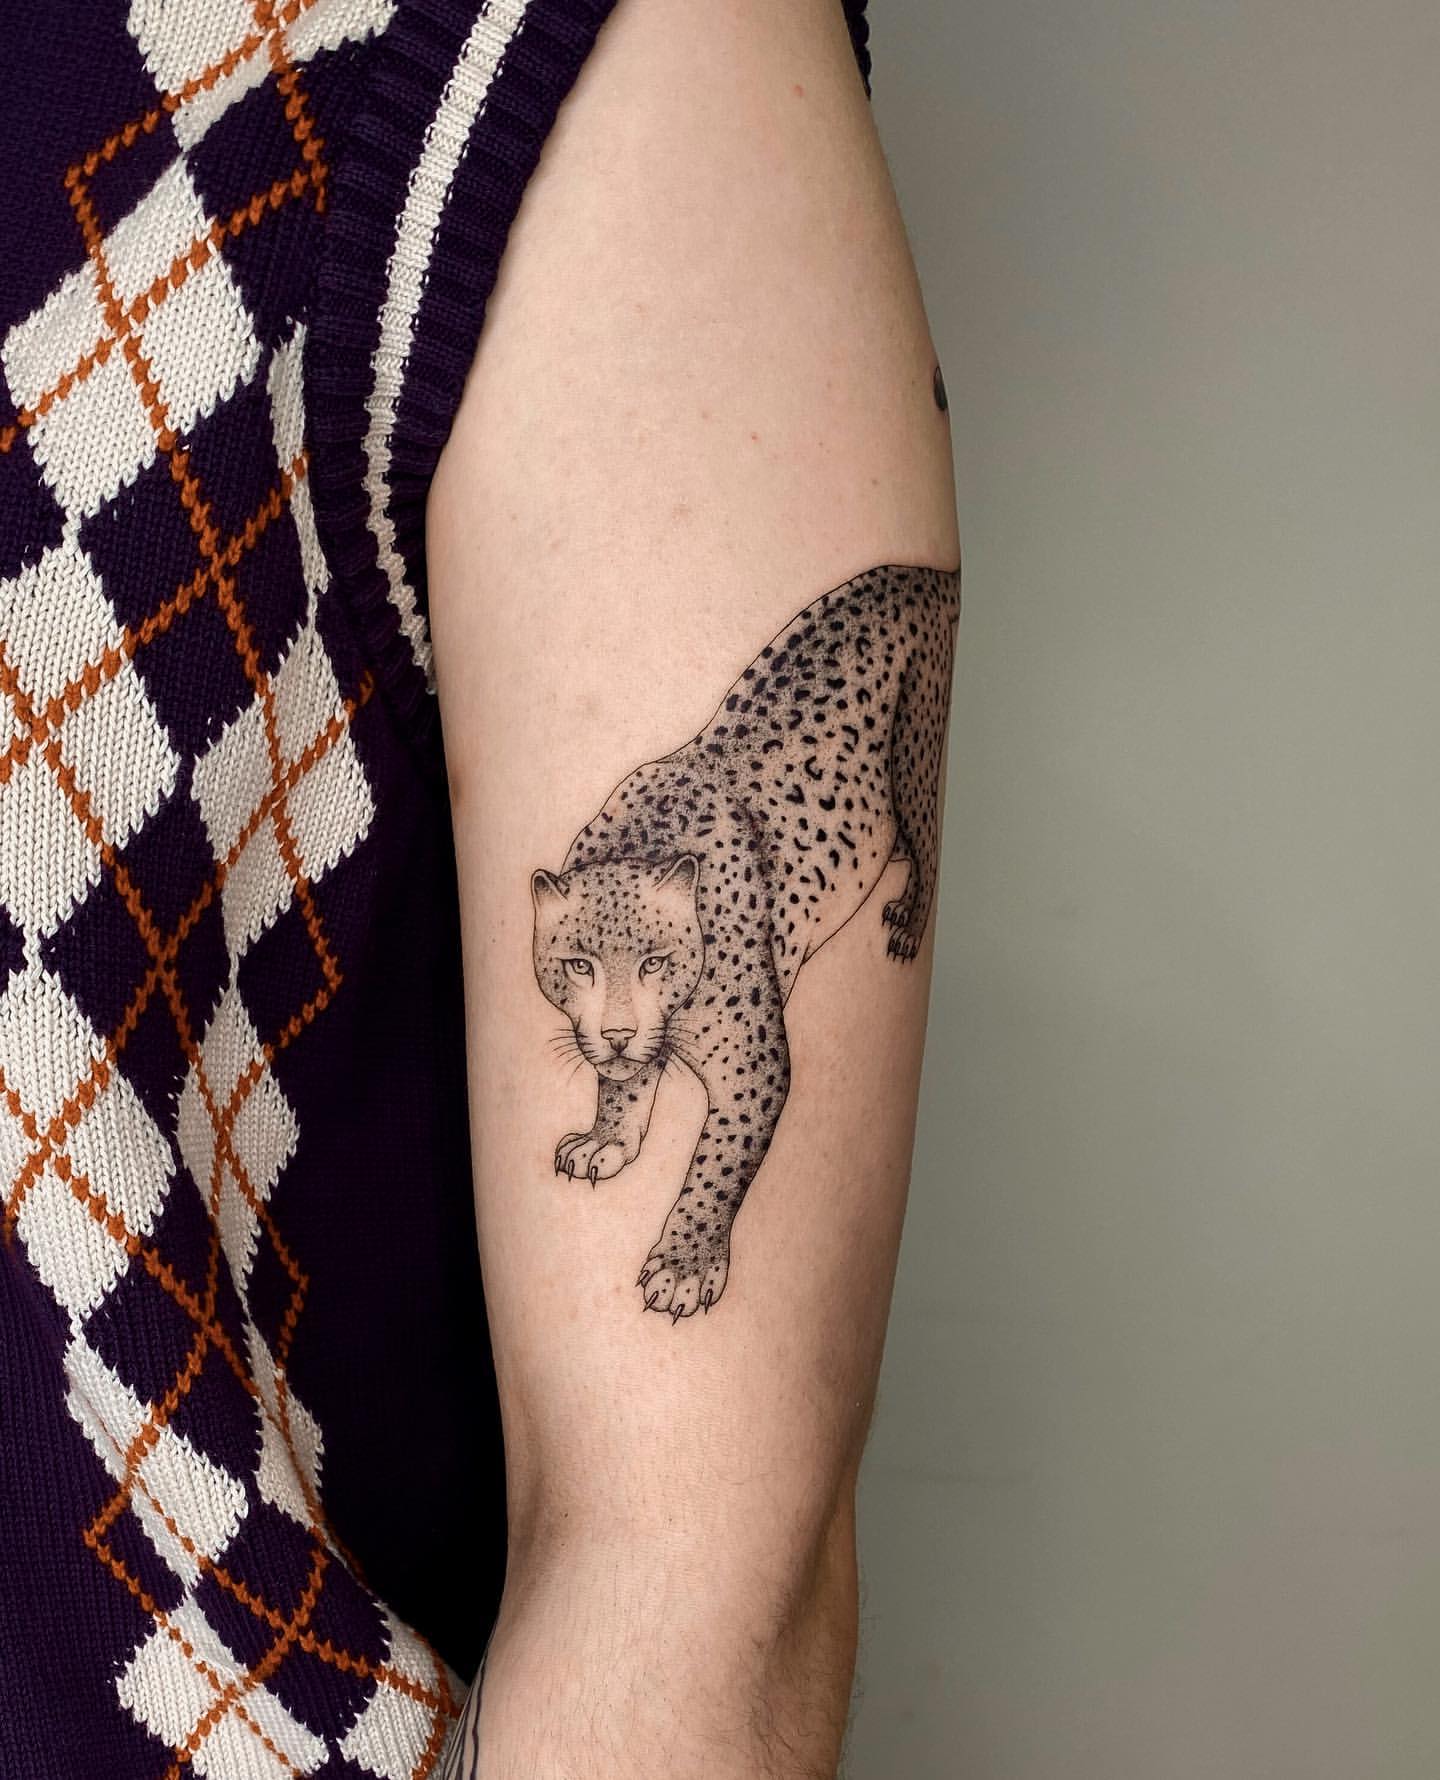 Leopard and Jaguar Tattoo Ideas 13